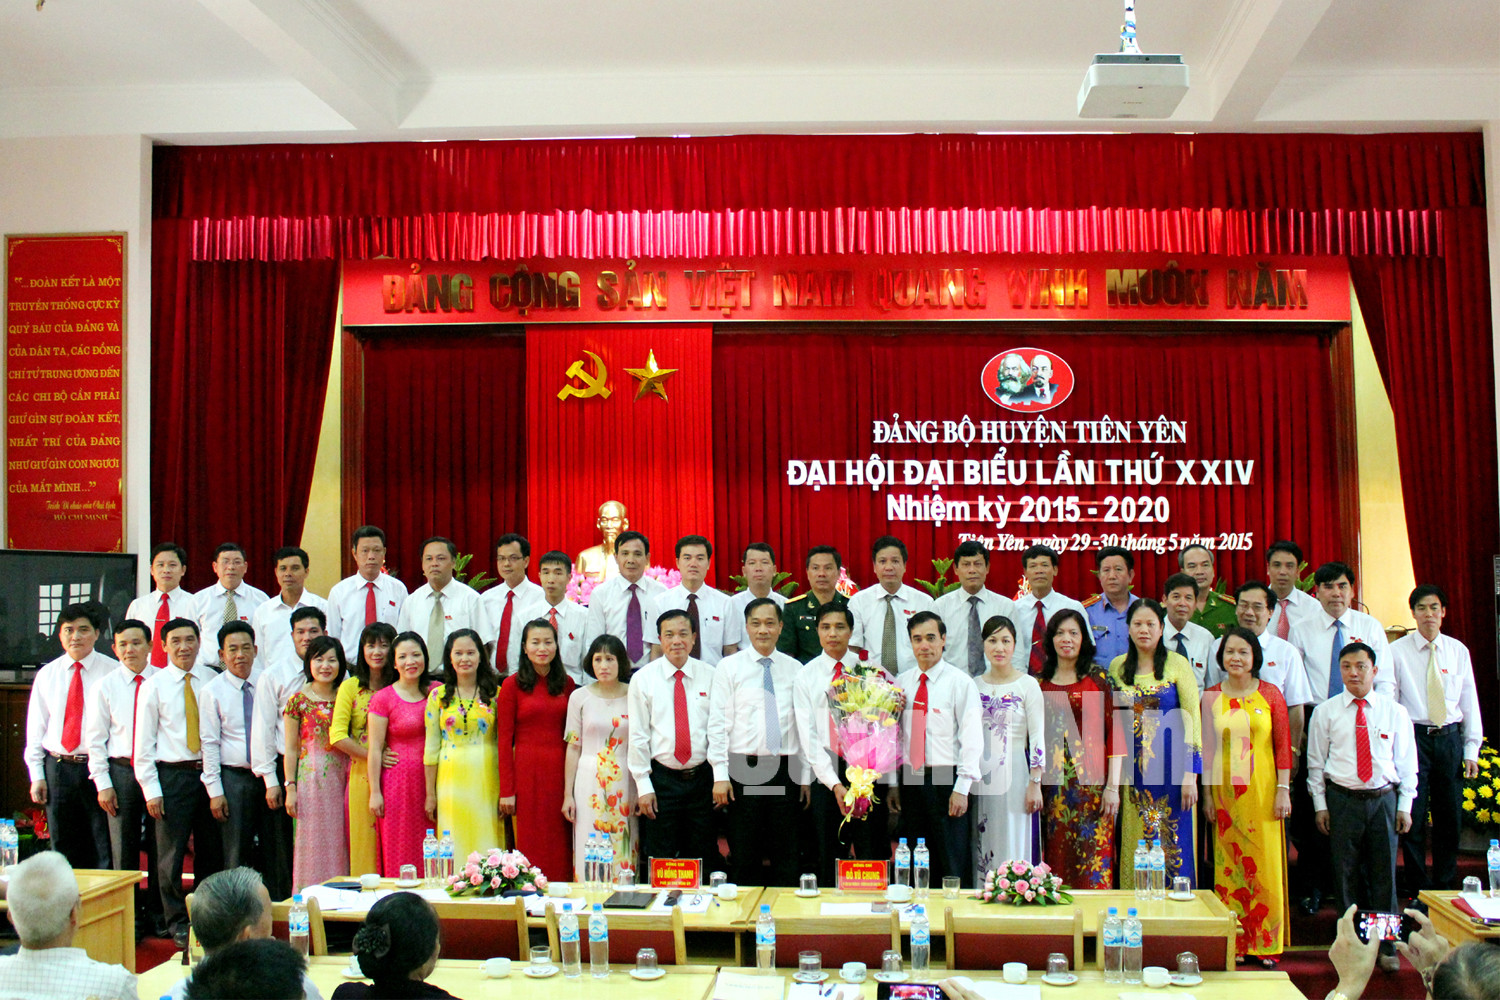 Đồng chí Vũ Hồng Thanh, Phó Bí thư Tỉnh ủy tặng hoa chúc mừng Ban Chấp hành Đảng bộ huyện nhiệm kỳ 2015-2020